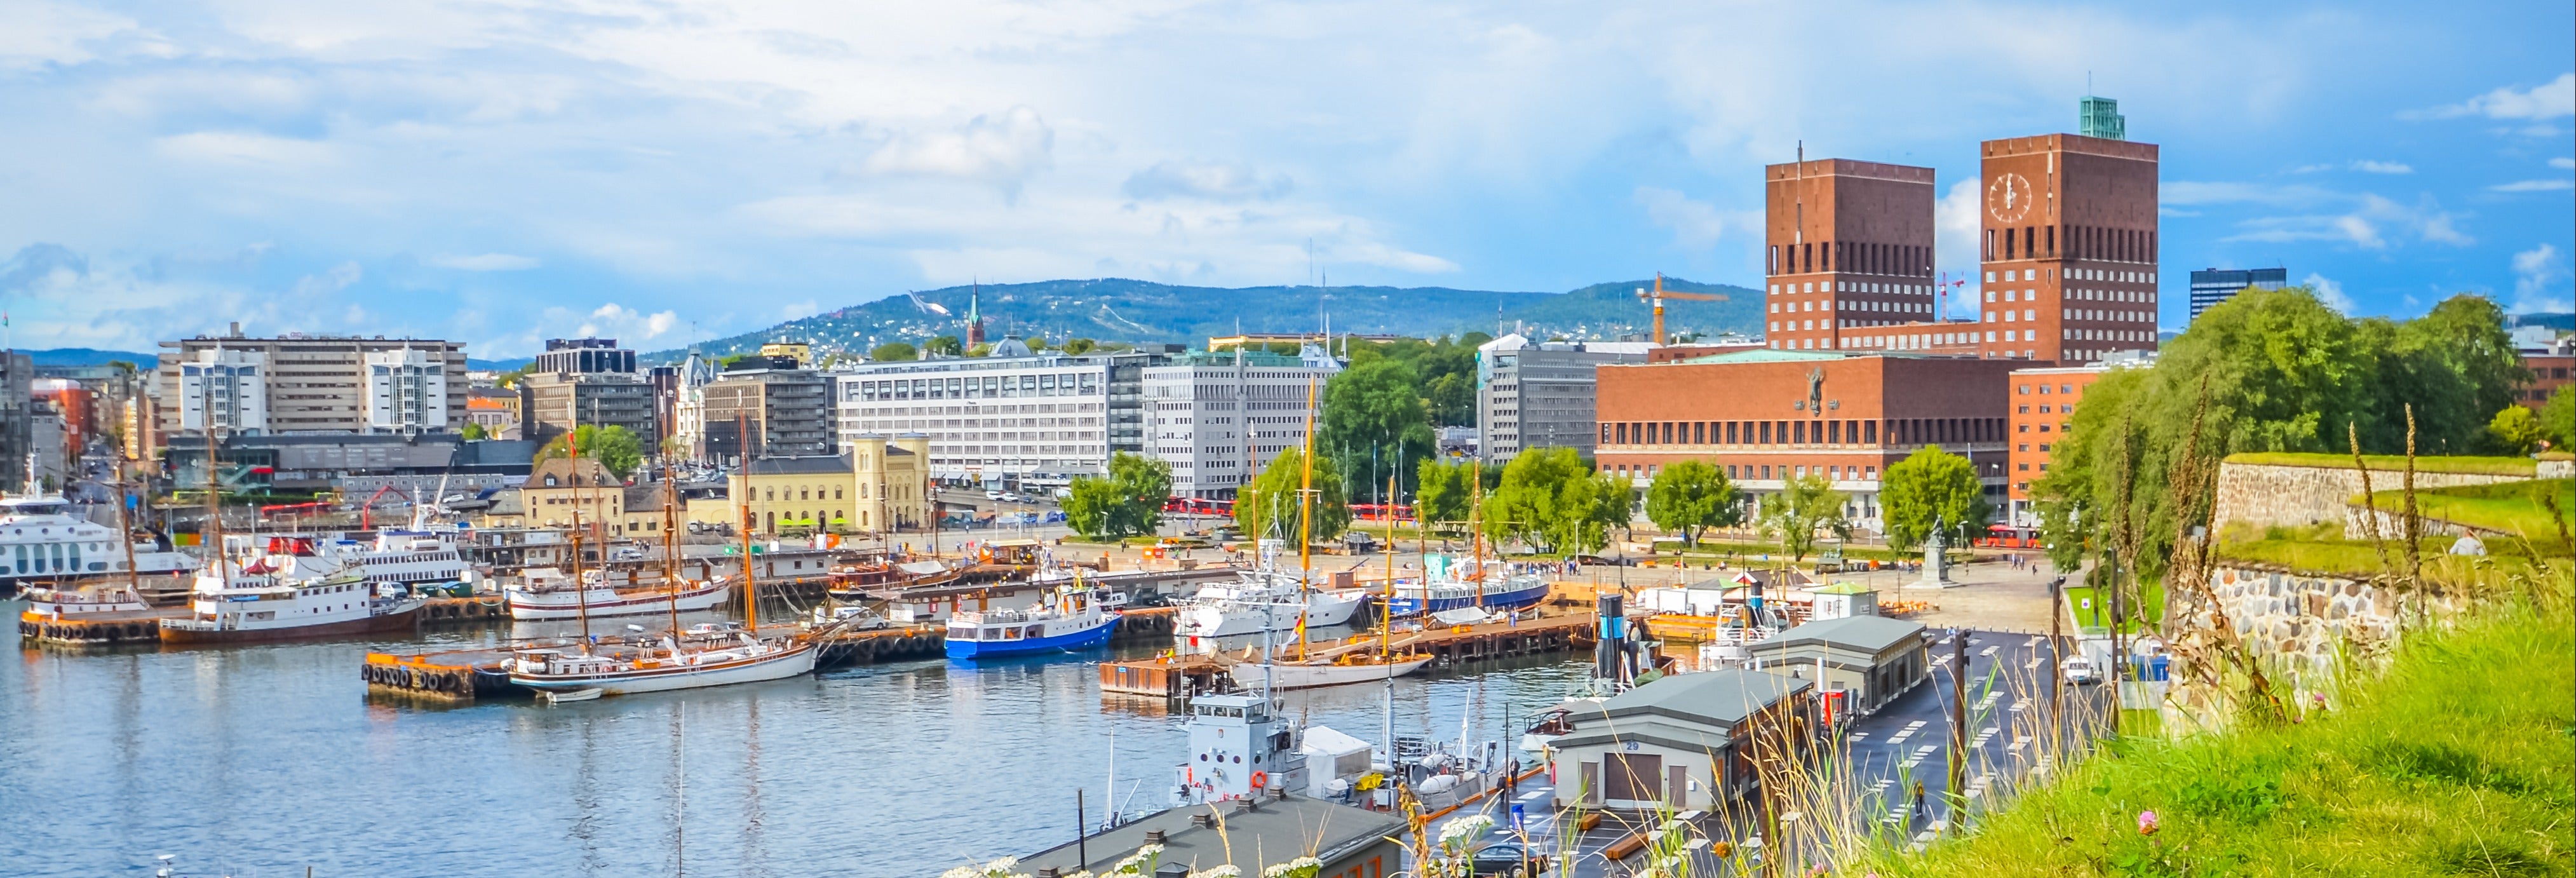 Crucero de verano por el fiordo de Oslo